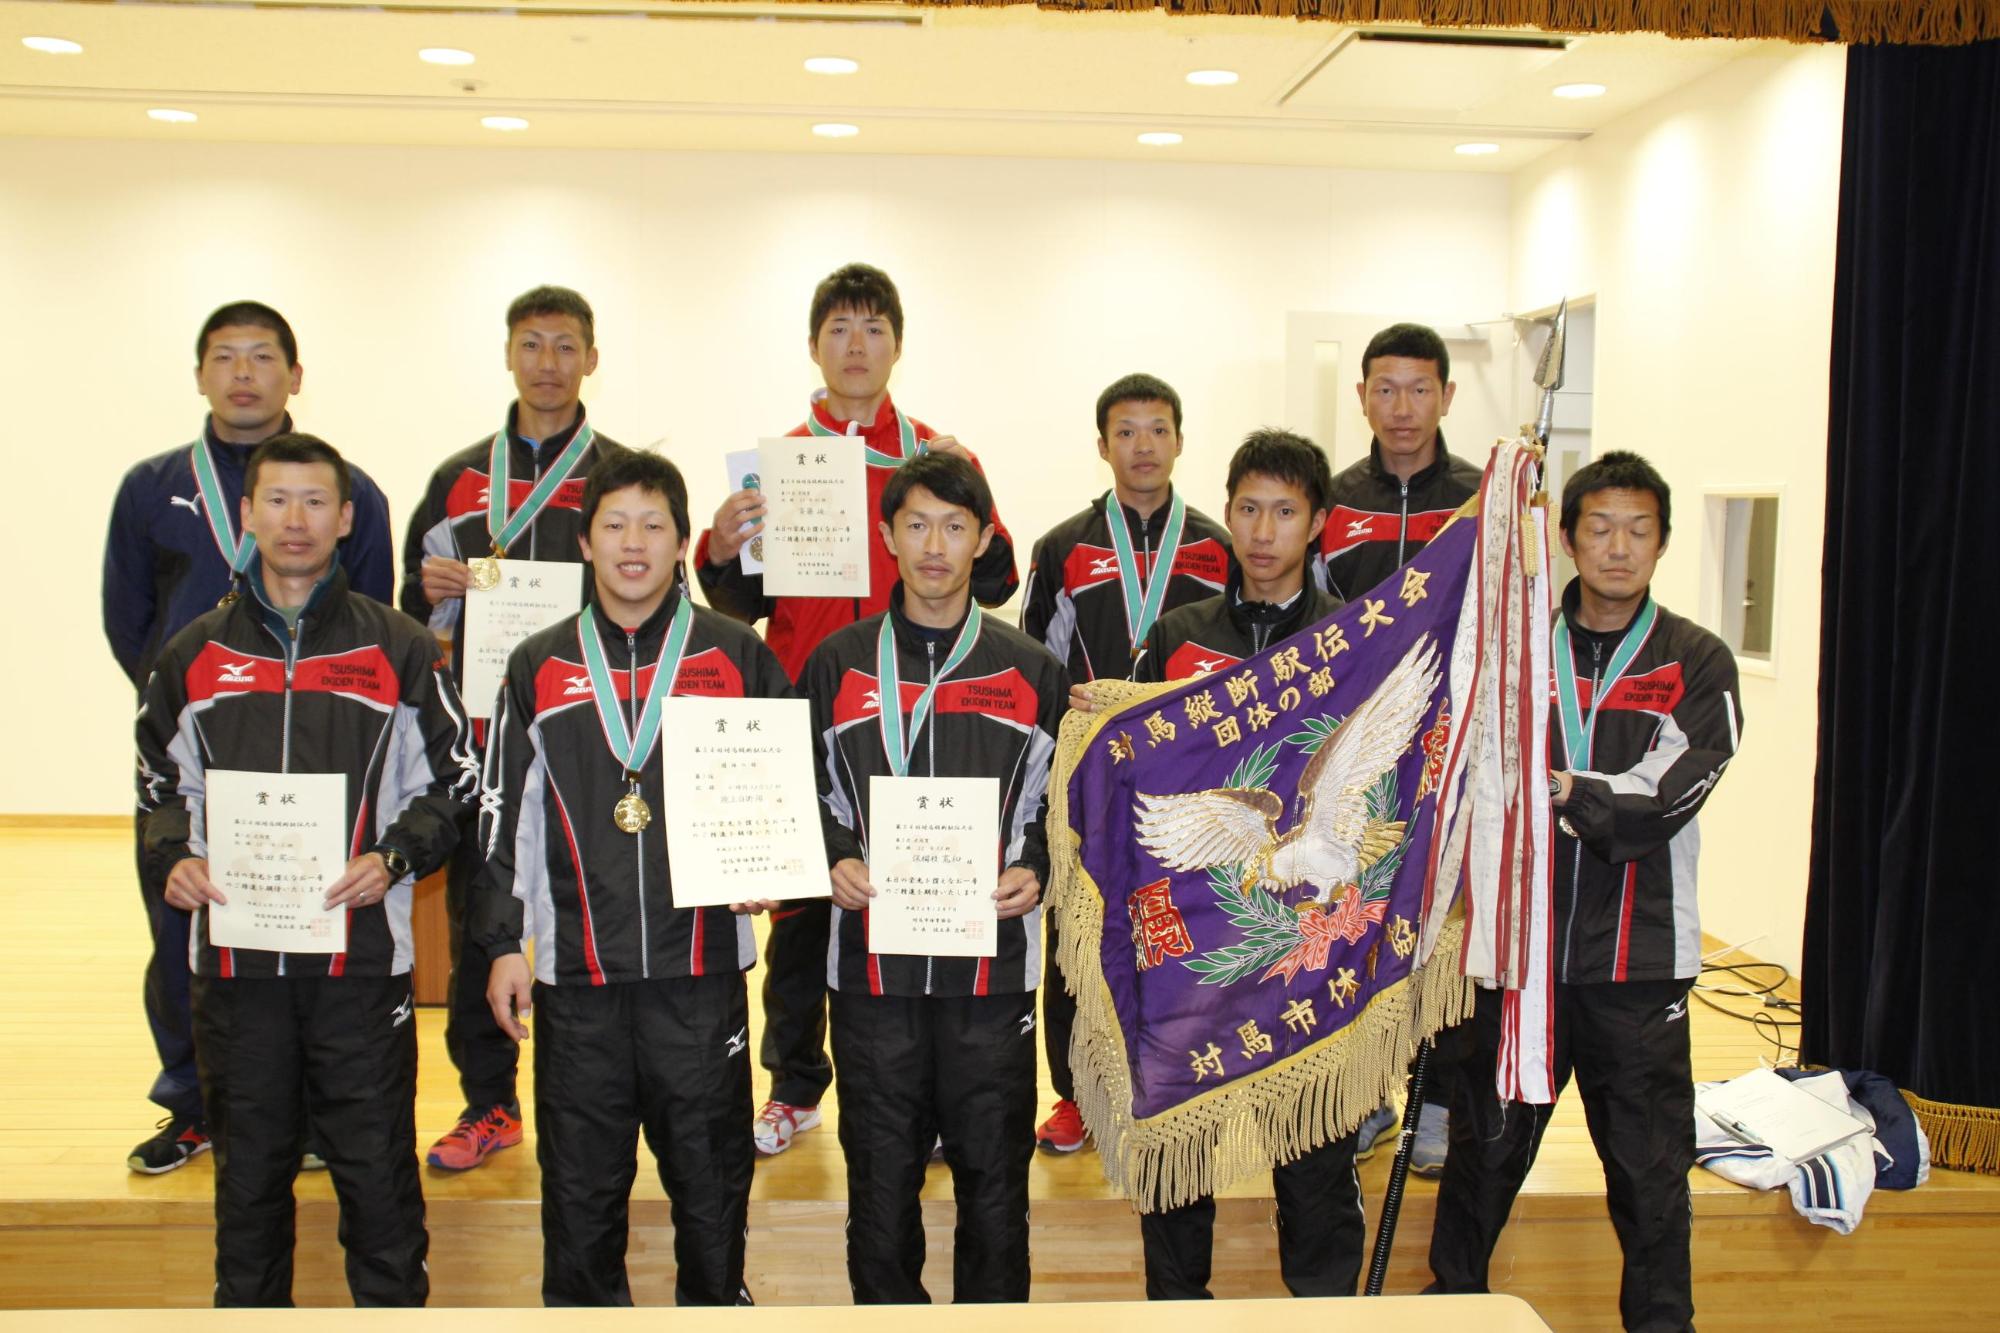 優勝旗と賞状を手に正面を向く団体の部で優勝した陸上自衛隊チームメンバーの写真